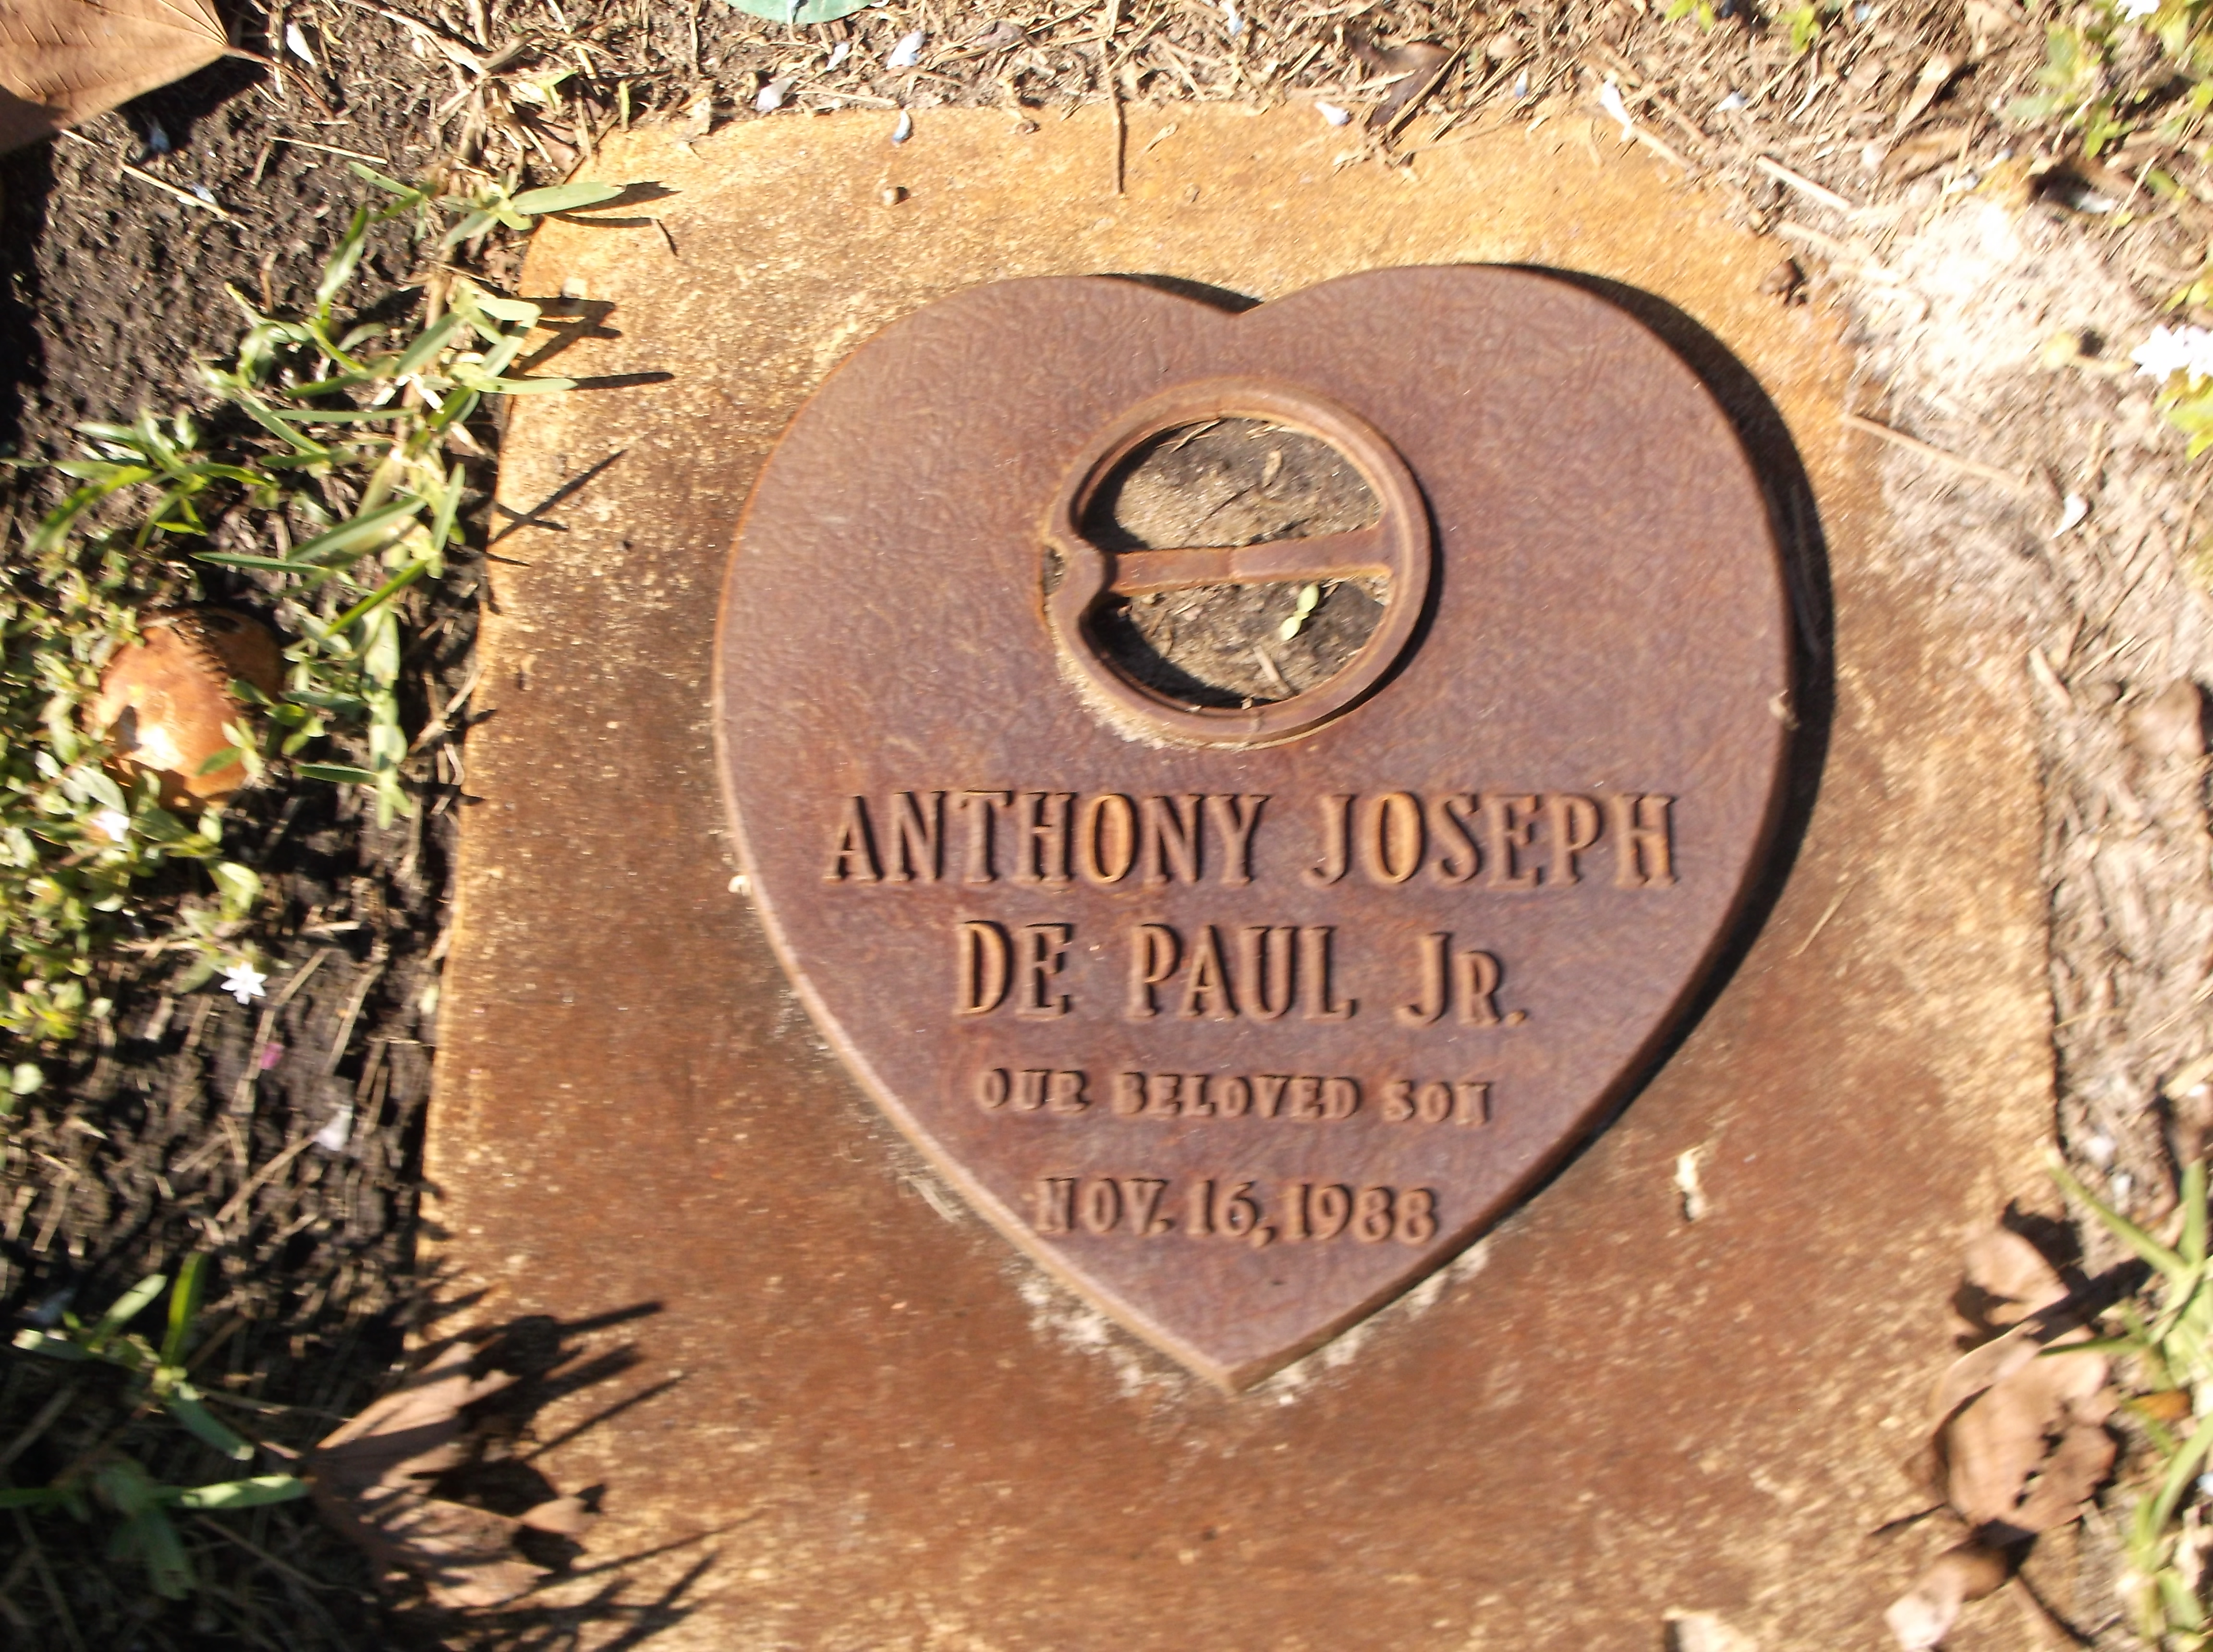 Anthony Joseph De Paul, Jr